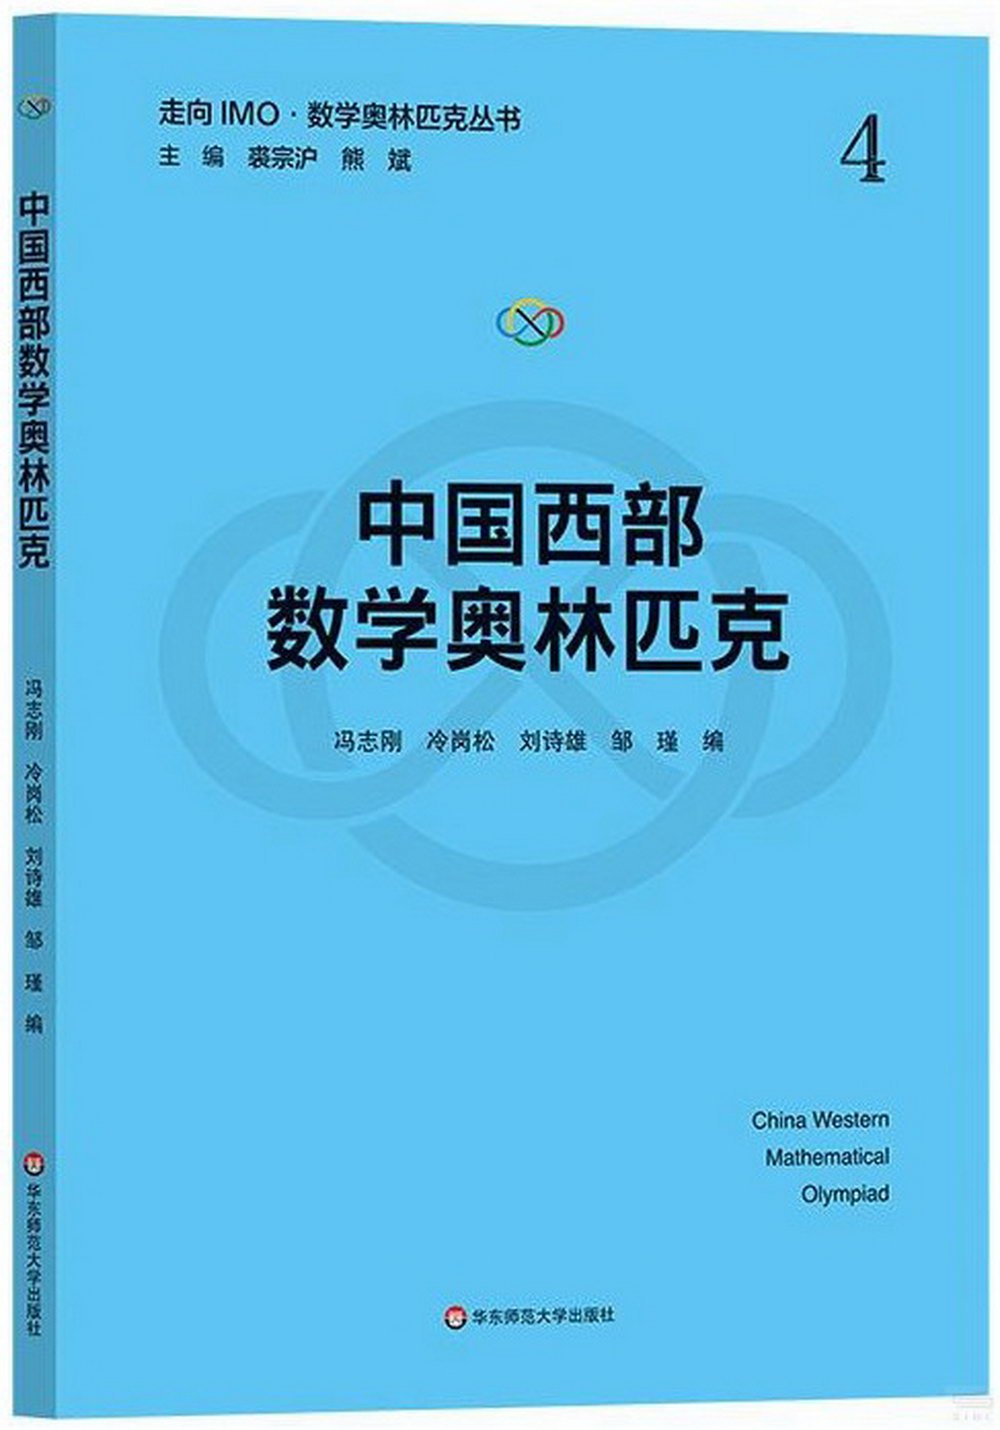 中國西部數學奧林匹克